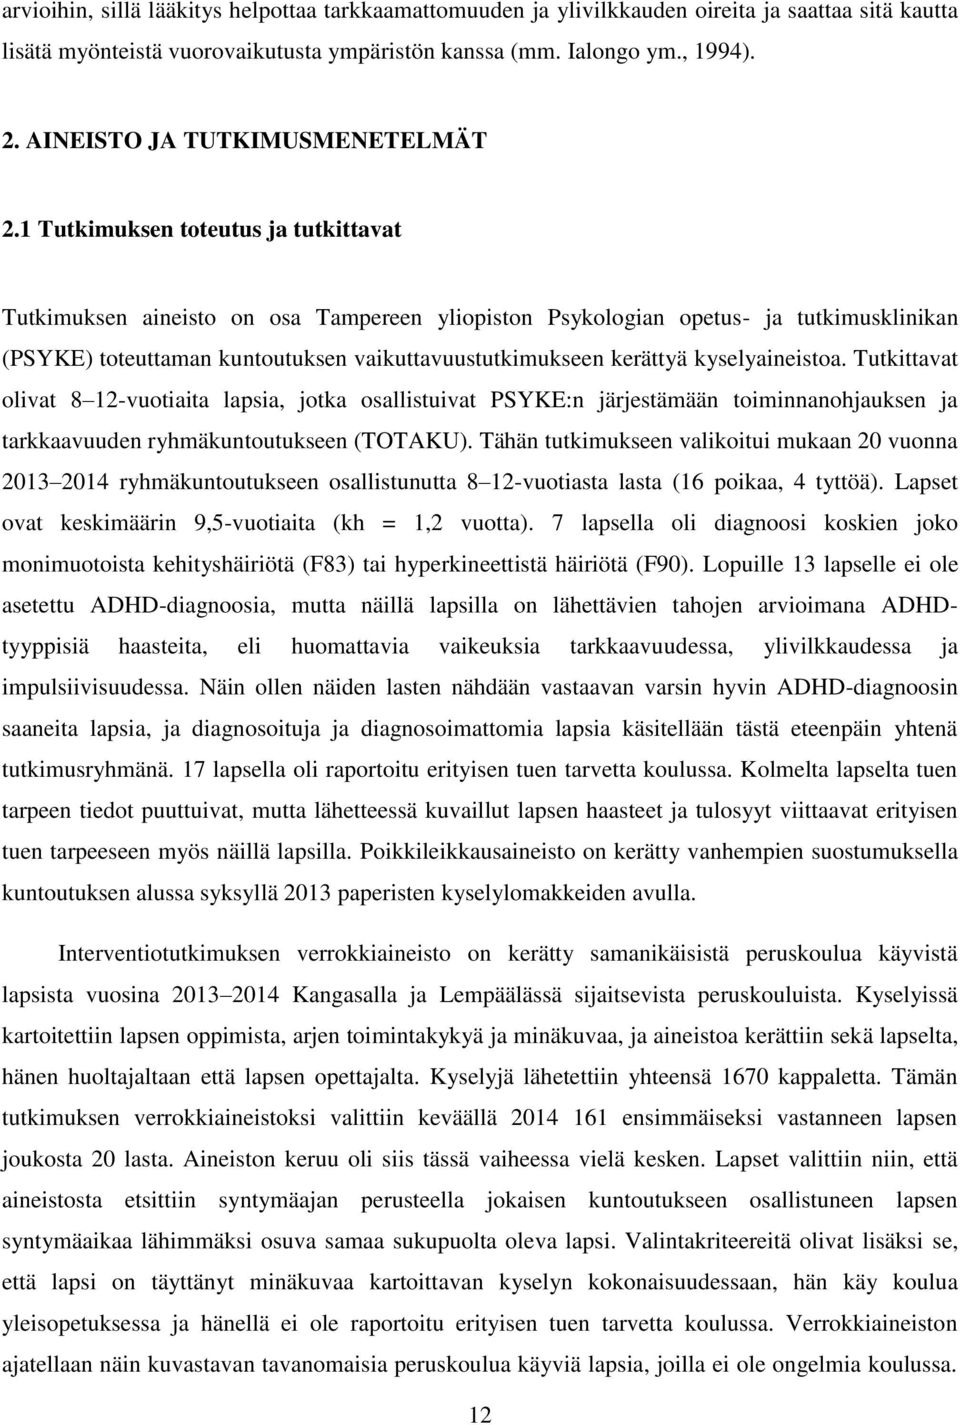 1 Tutkimuksen toteutus ja tutkittavat Tutkimuksen aineisto on osa Tampereen yliopiston Psykologian opetus- ja tutkimusklinikan (PSYKE) toteuttaman kuntoutuksen vaikuttavuustutkimukseen kerättyä